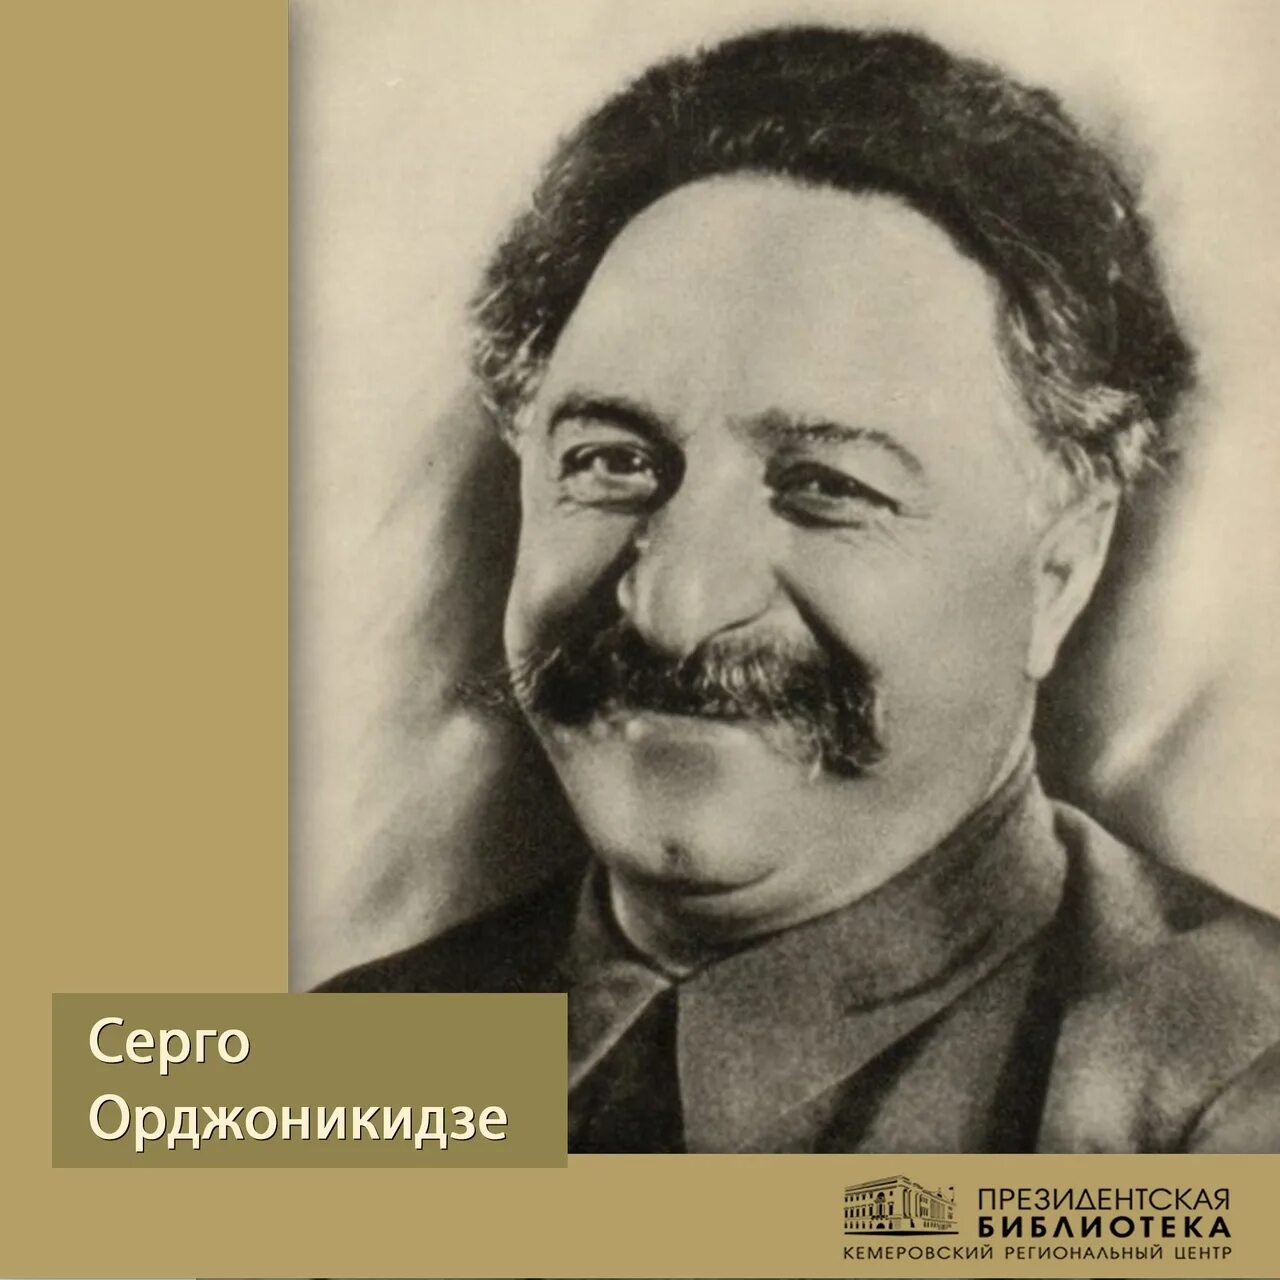 Серго орджоникидзе 1. Серго Орджоникидзе в 1921 году.